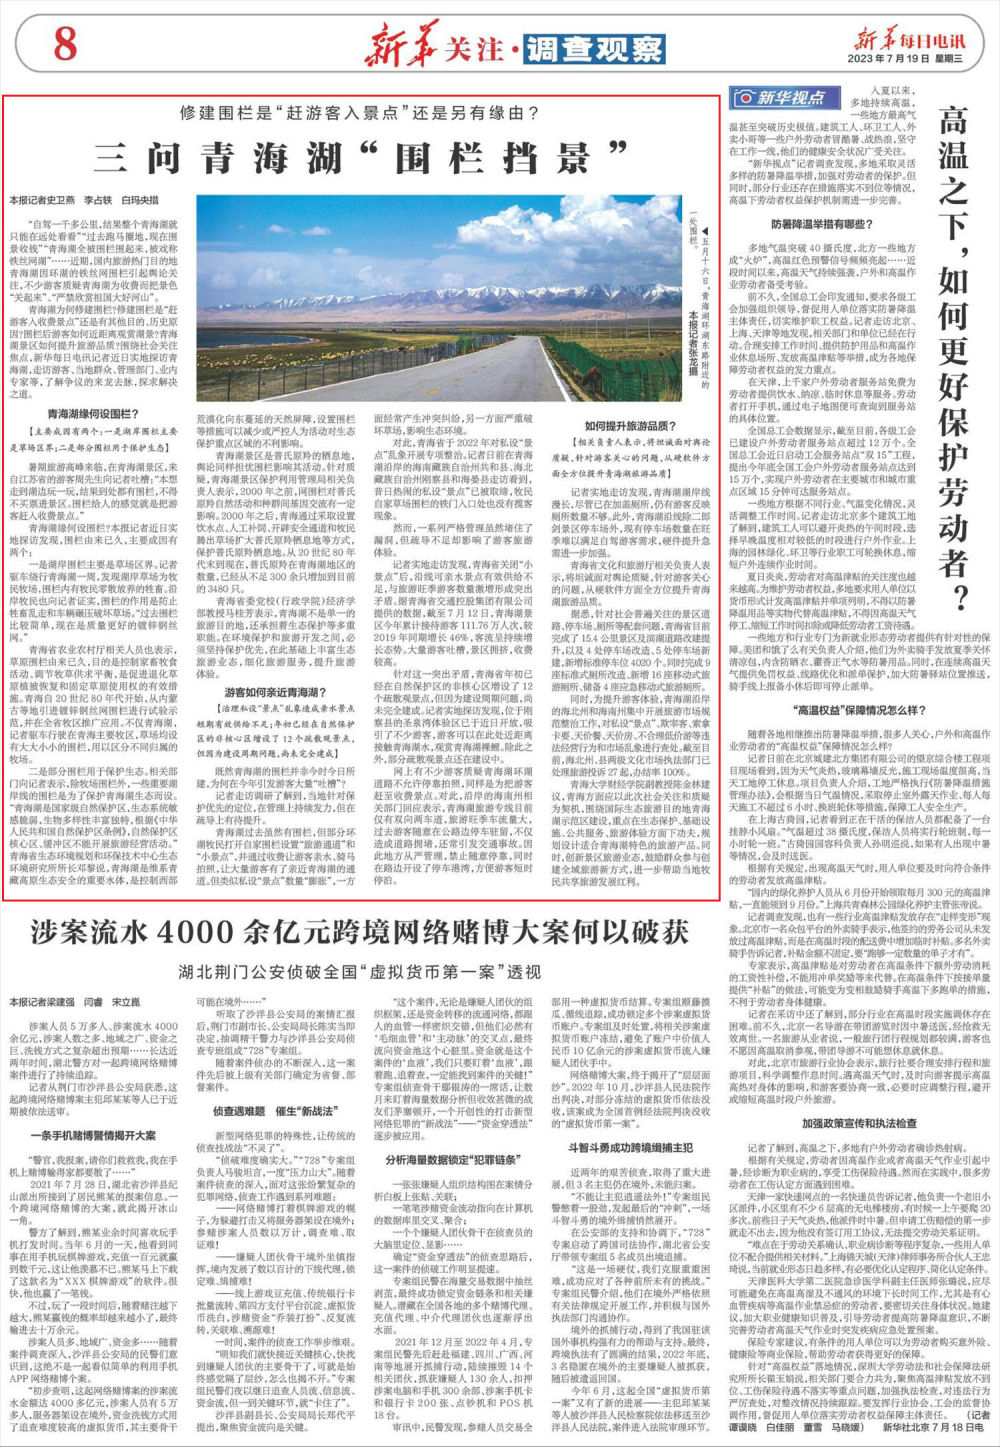 新华每日电讯丨三问青海湖“围栏挡